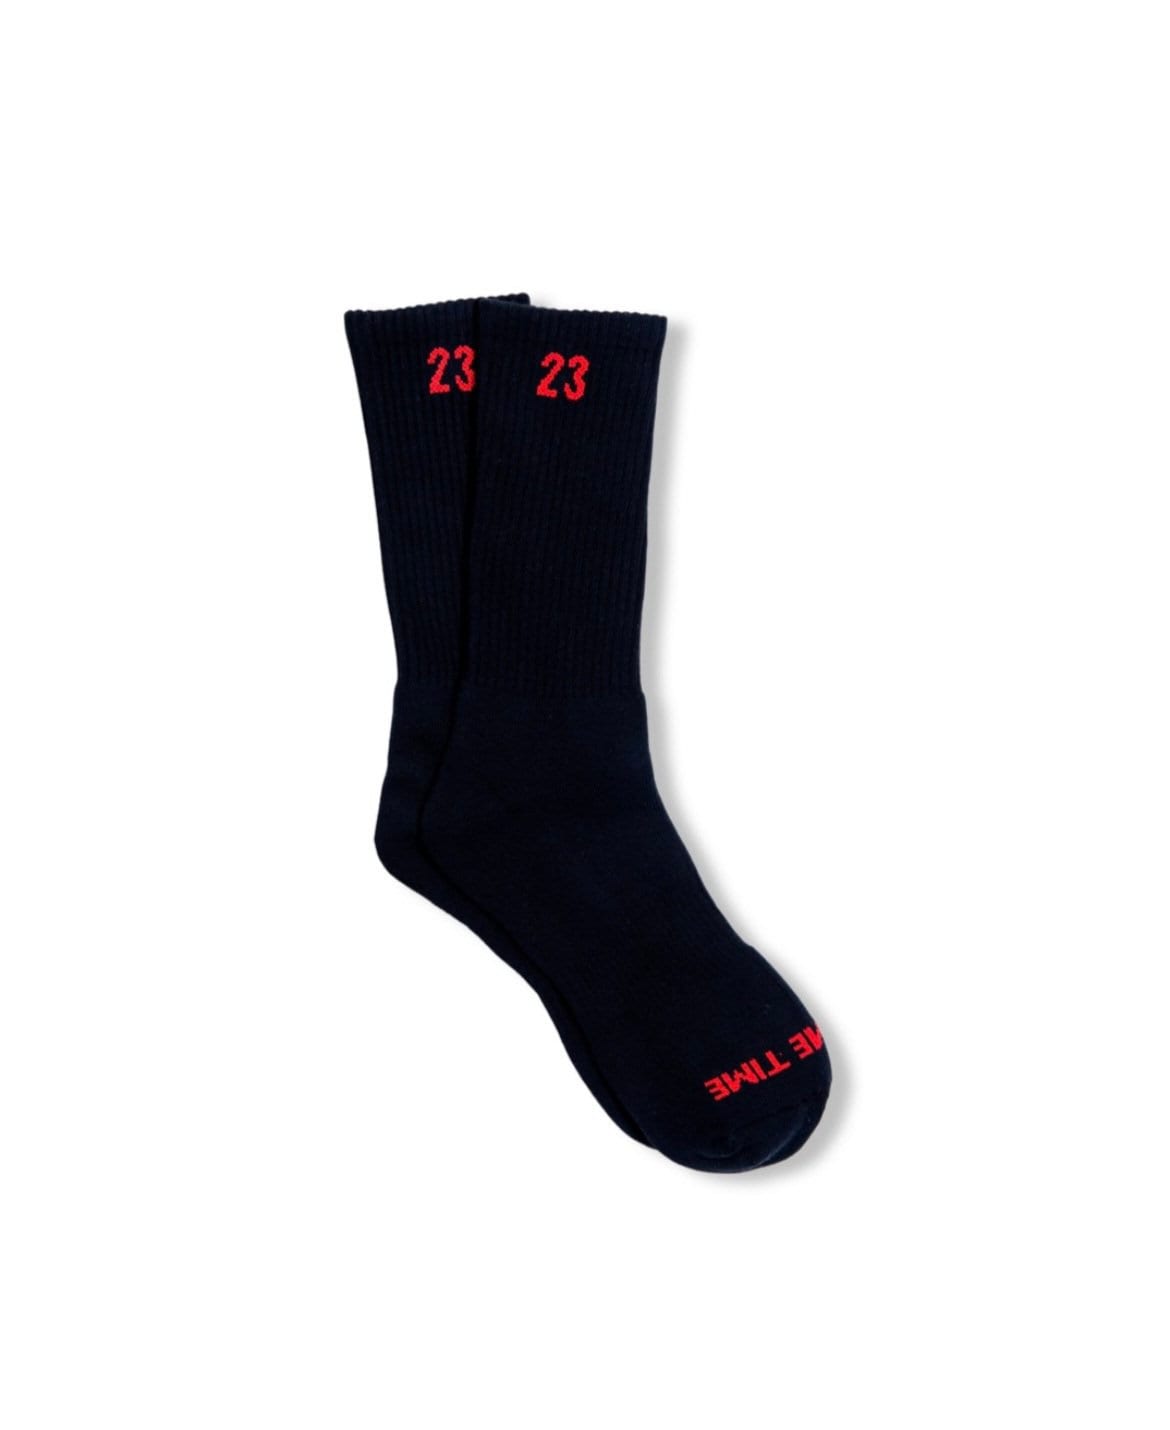 SPACE JAM 11 Socks! - SILKY SOCKS